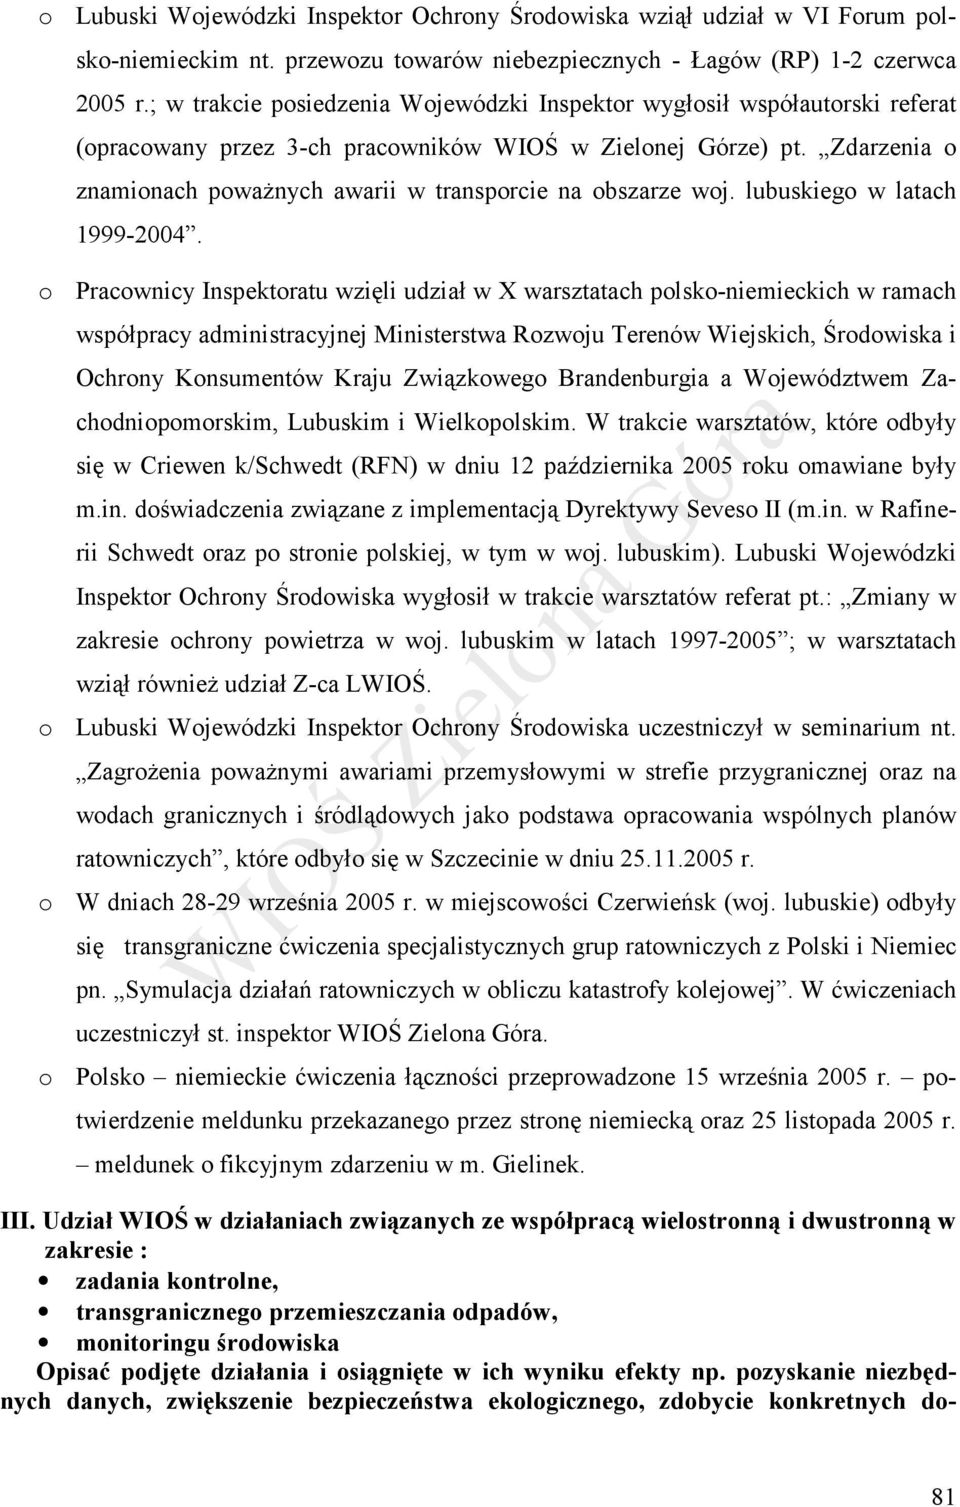 Zdarzenia o znamionach poważnych awarii w transporcie na obszarze woj. lubuskiego w latach 1999-2004.